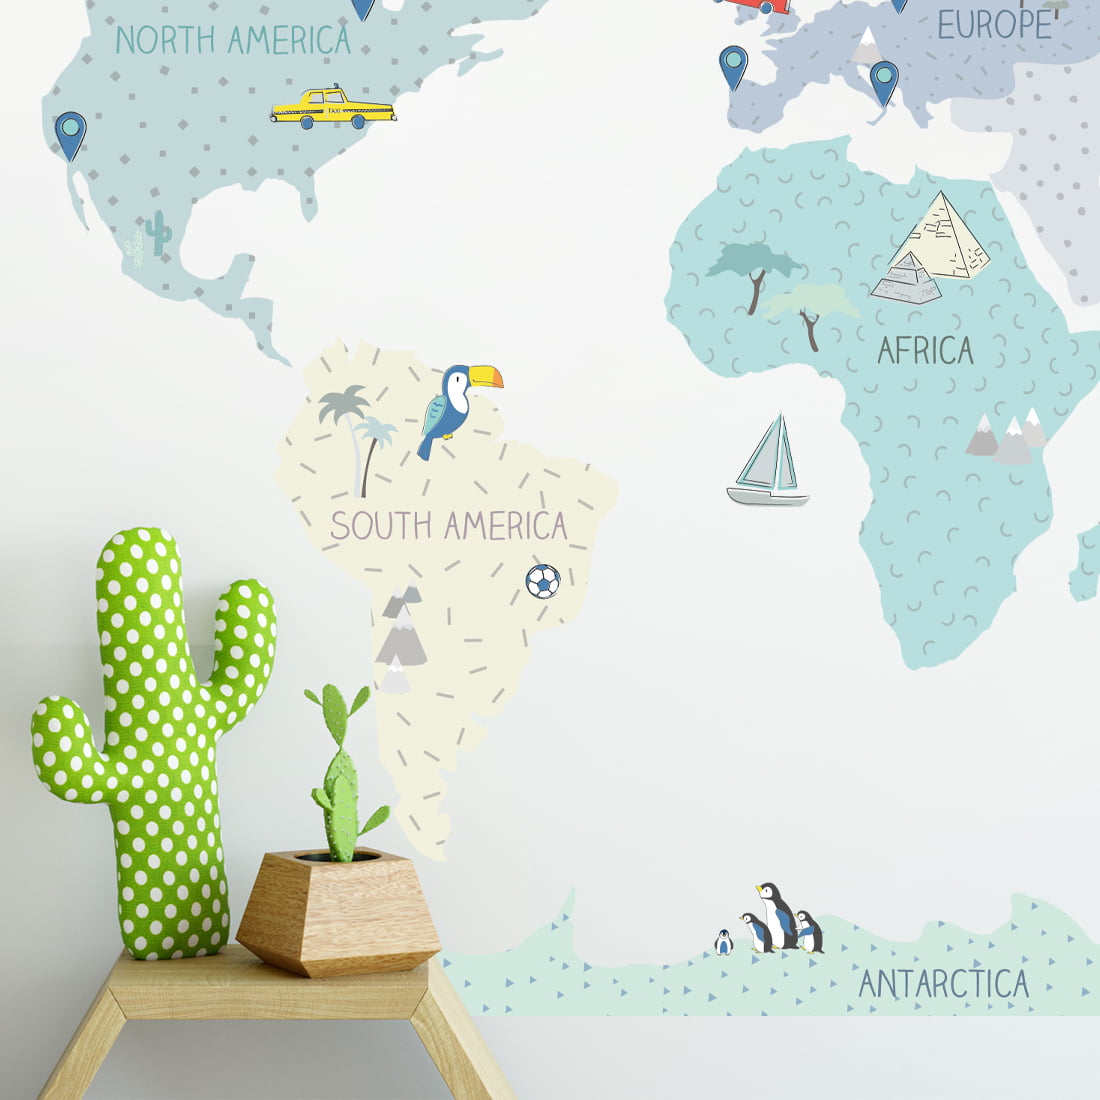 Wandsticker Weltkarte in minze pastell Farben mit vier Kontinenten unterschrieben auf Englisch